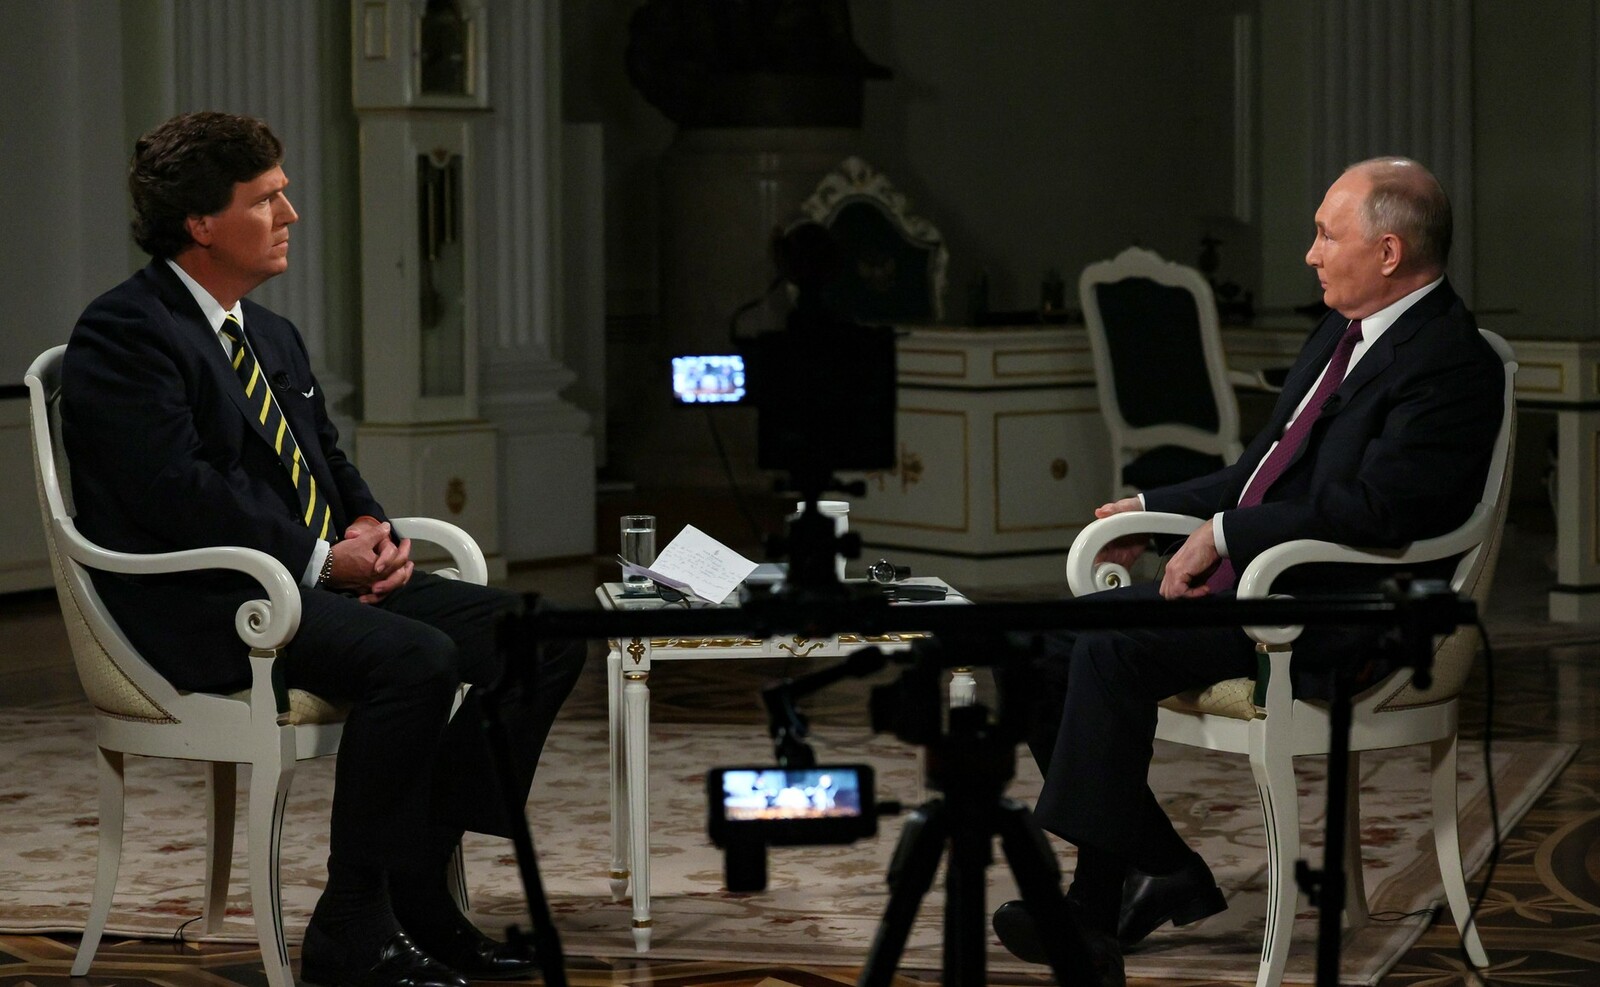 Интервью Путина набрало около миллиарда просмотров, заявила Симоньян